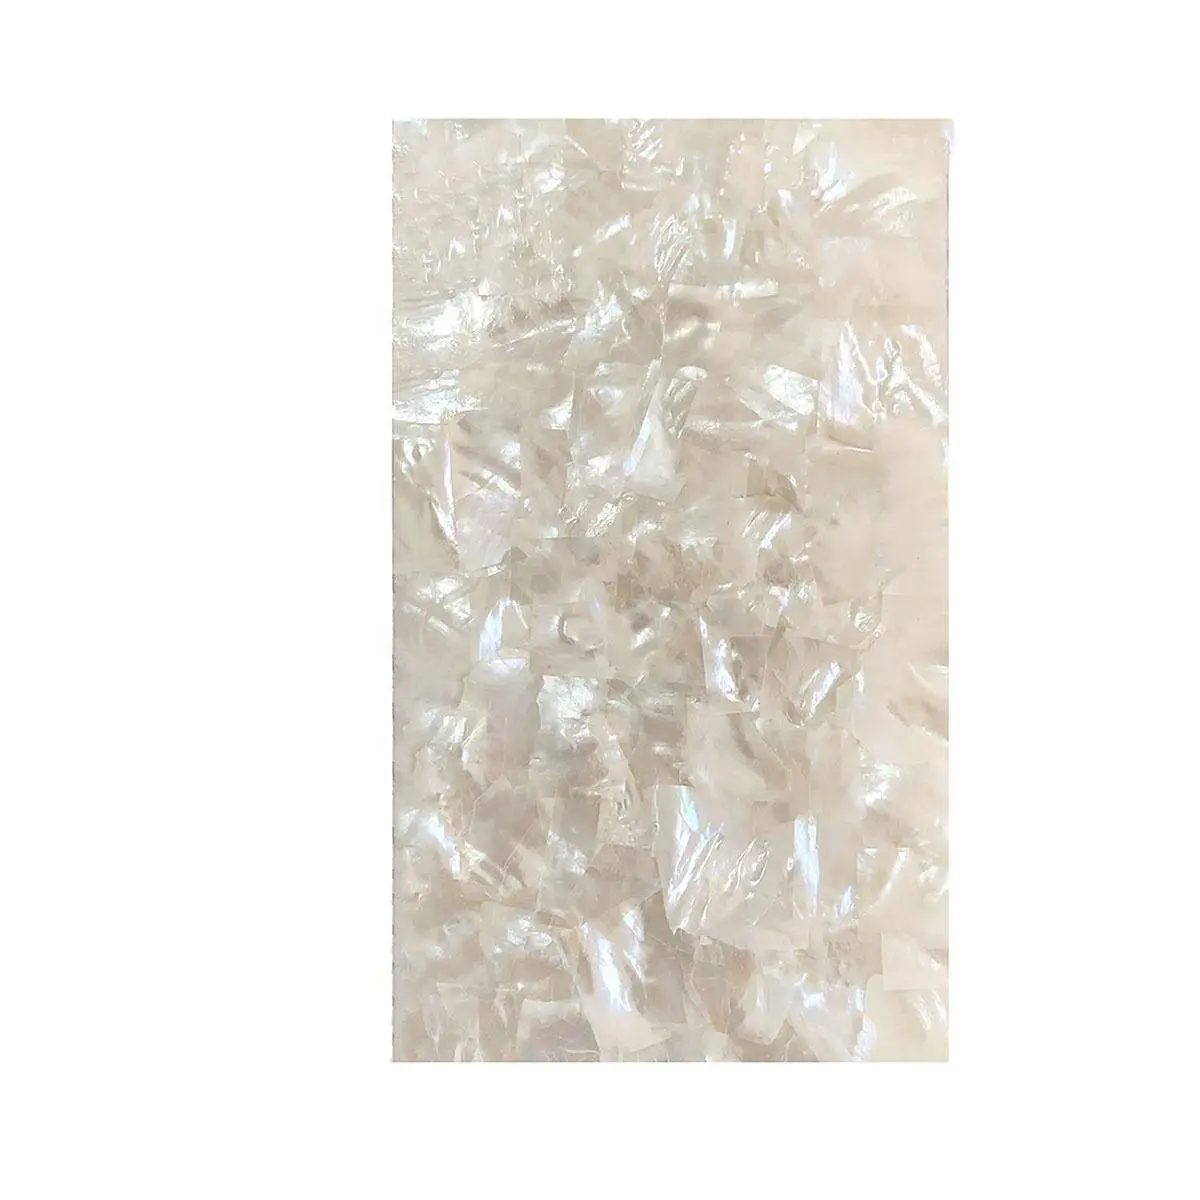 XE-032 nuovo materiale naturale intarsio di mobili in laminato Shell Sheet Sheet intarsio fogli di conchiglie di mare per arte artigianato carta da parati